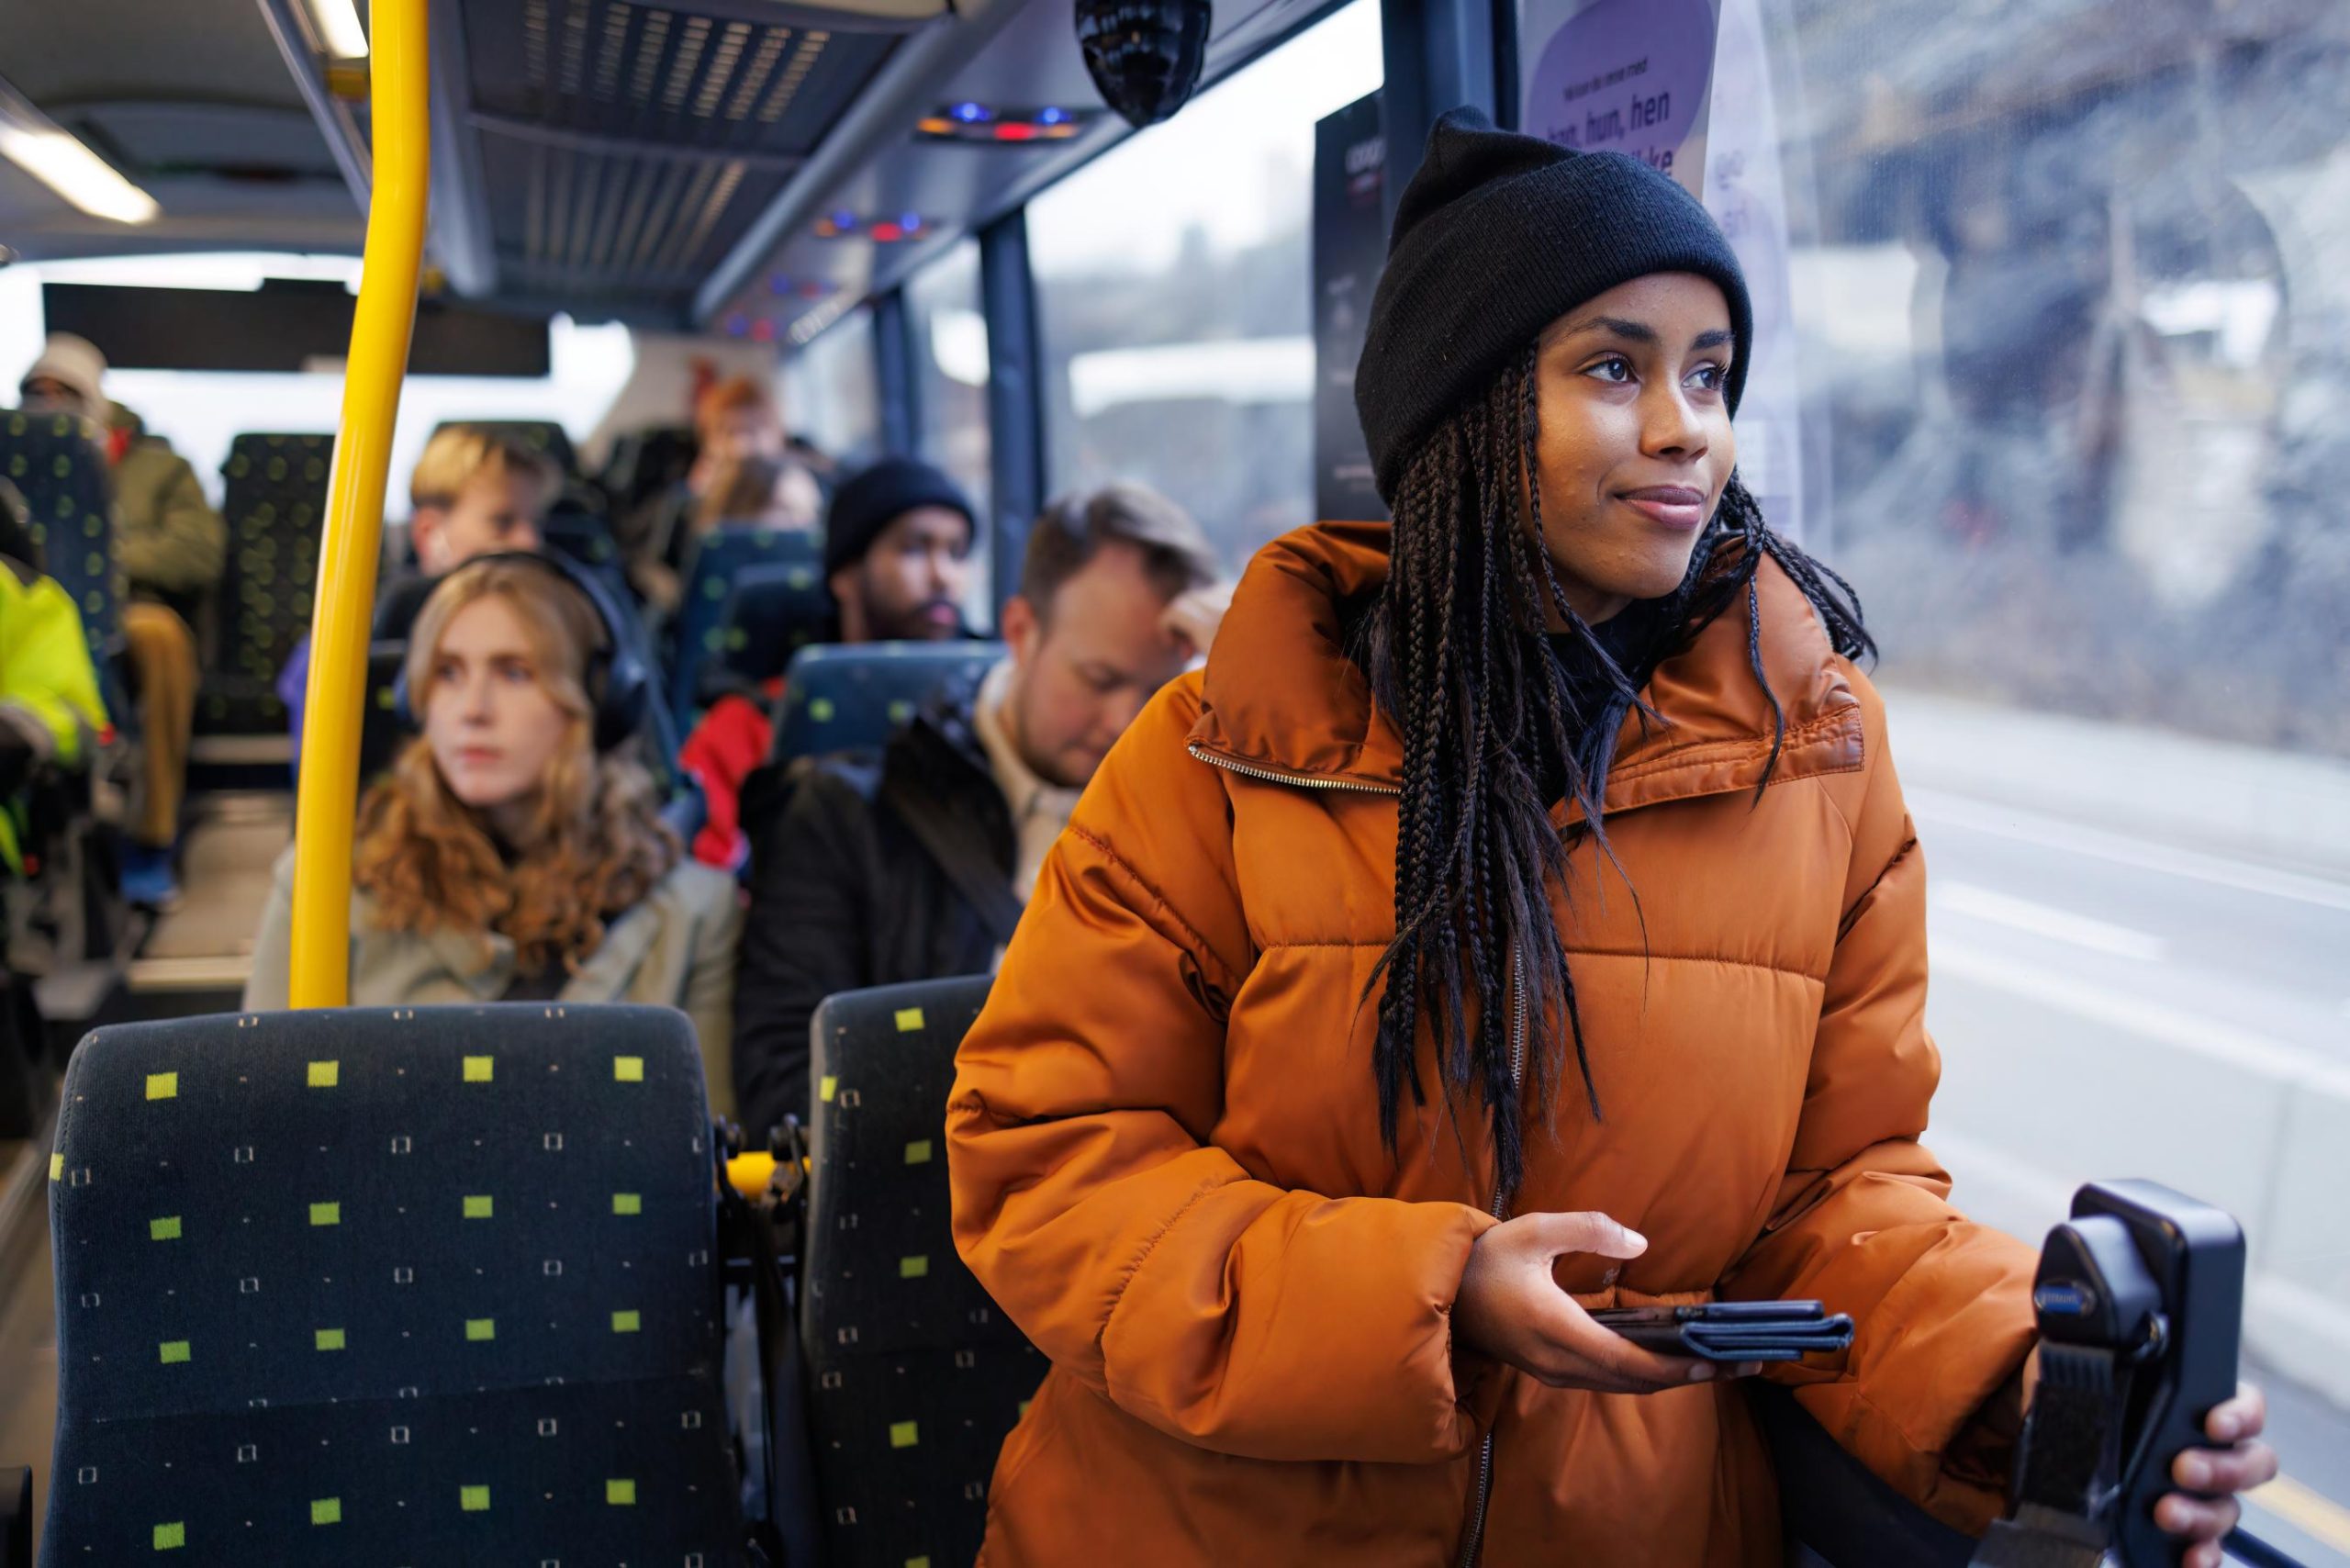 Kvinne stående på en buss ser ut av vinduet, med en mobiltelefon i hånden.